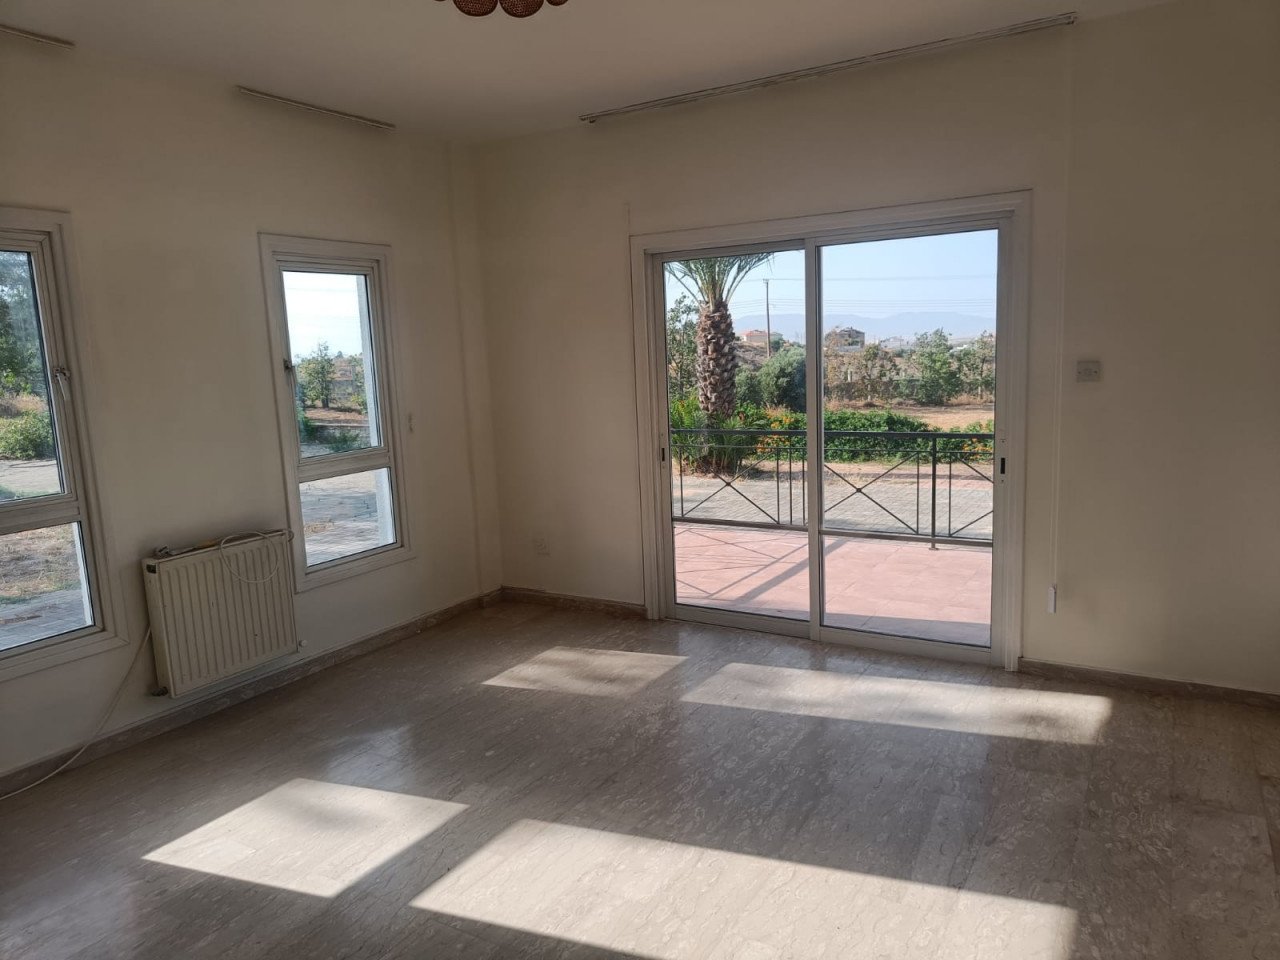 For Sale: Detached house, Agioi Trimithias, Nicosia, Cyprus FC-40136 - #3